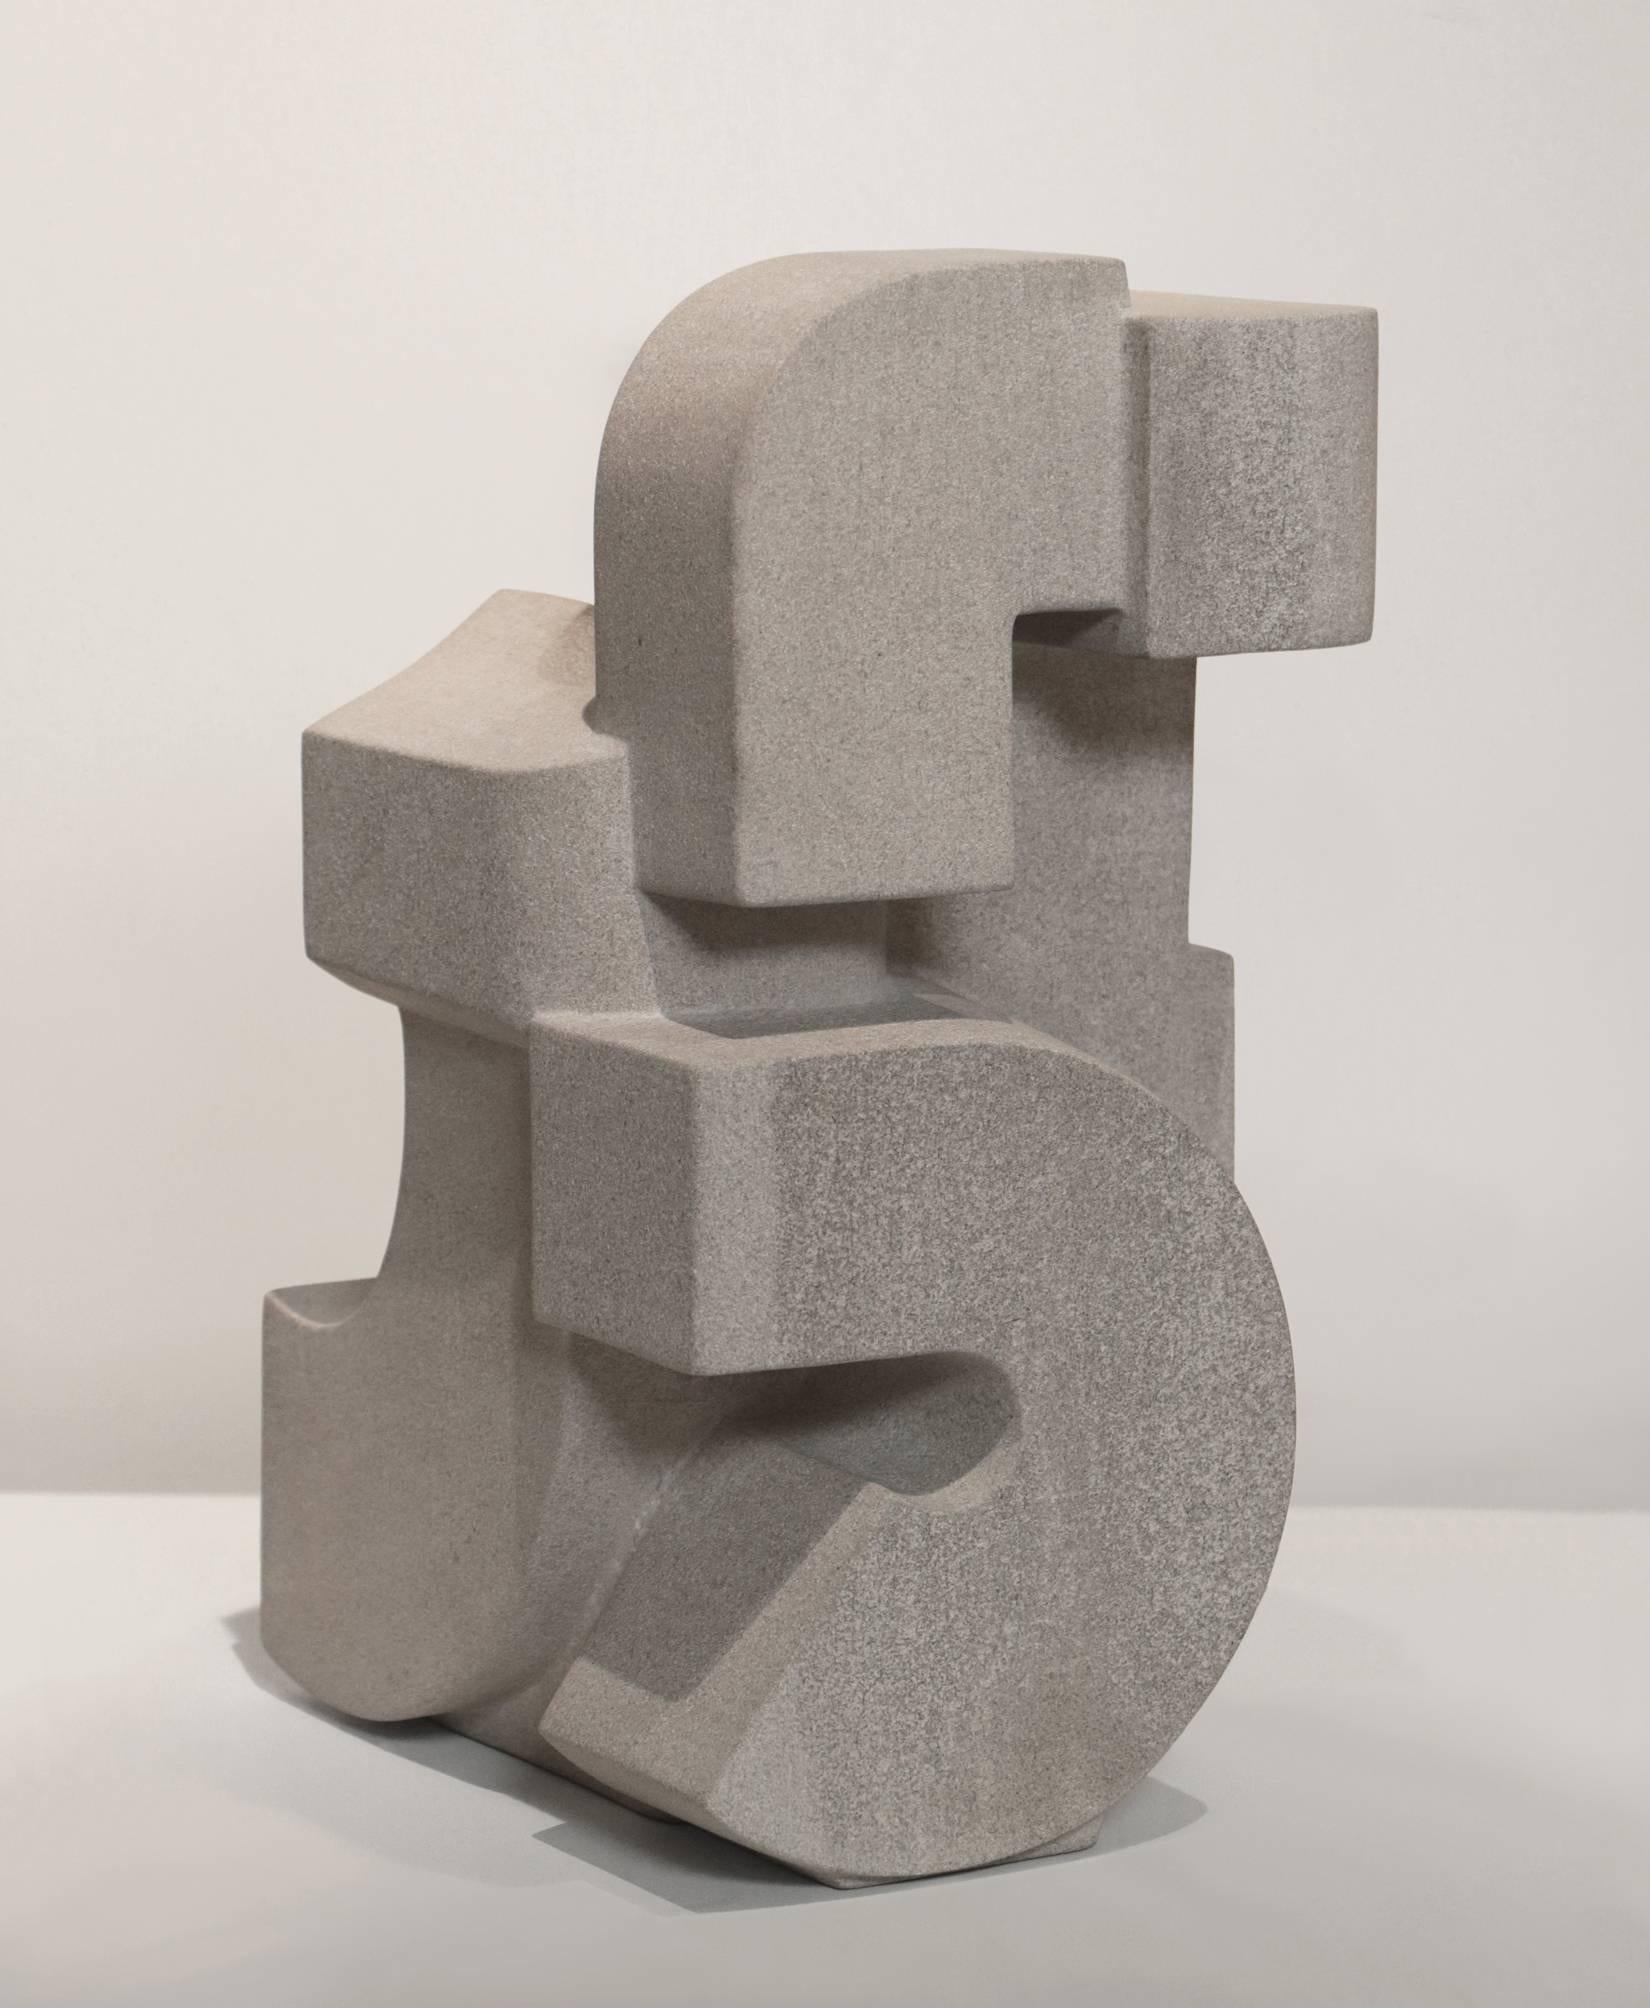 Euclidean Variation No. 8 - Sculpture by Jeff Metz